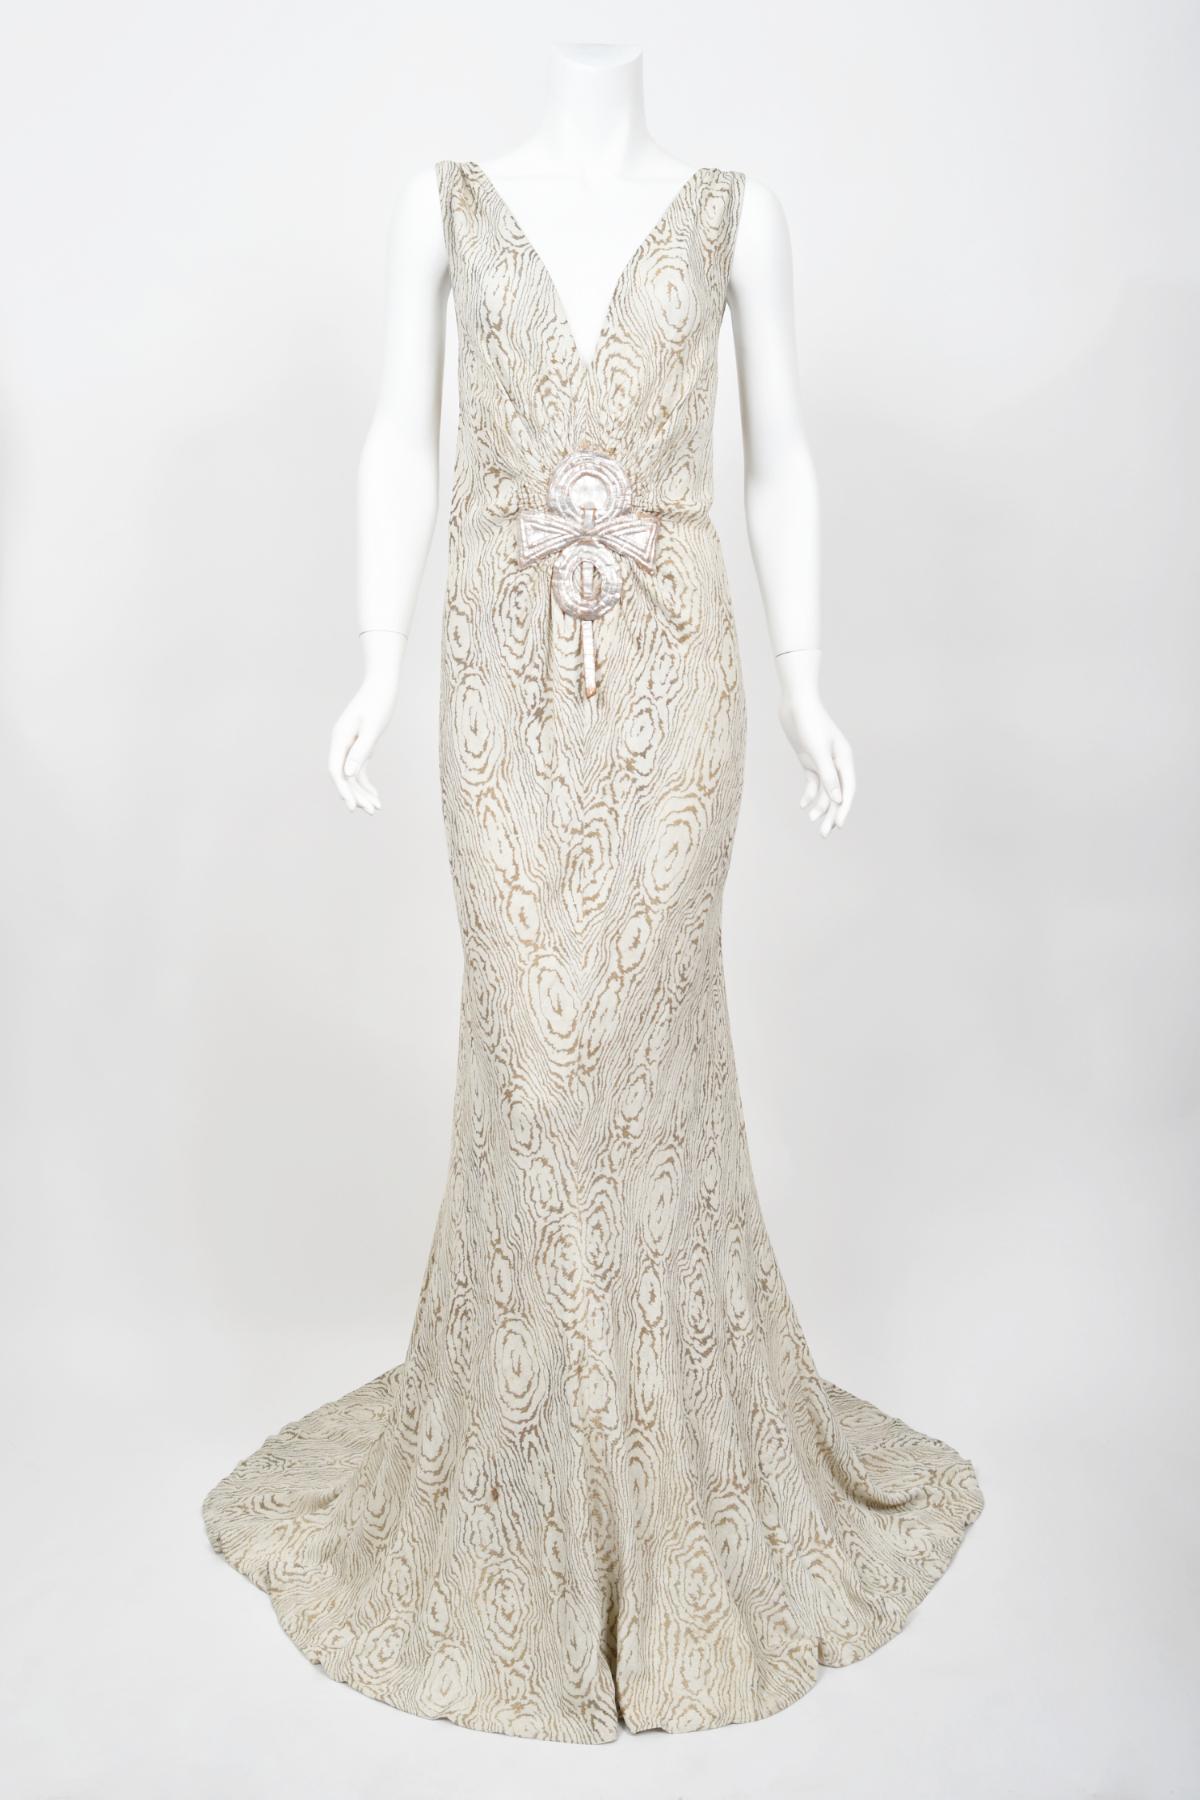 1930's Metallic Wood-Patterned Lamé Deco Appliqué Bias-Cut Trained Bridal Gown  3